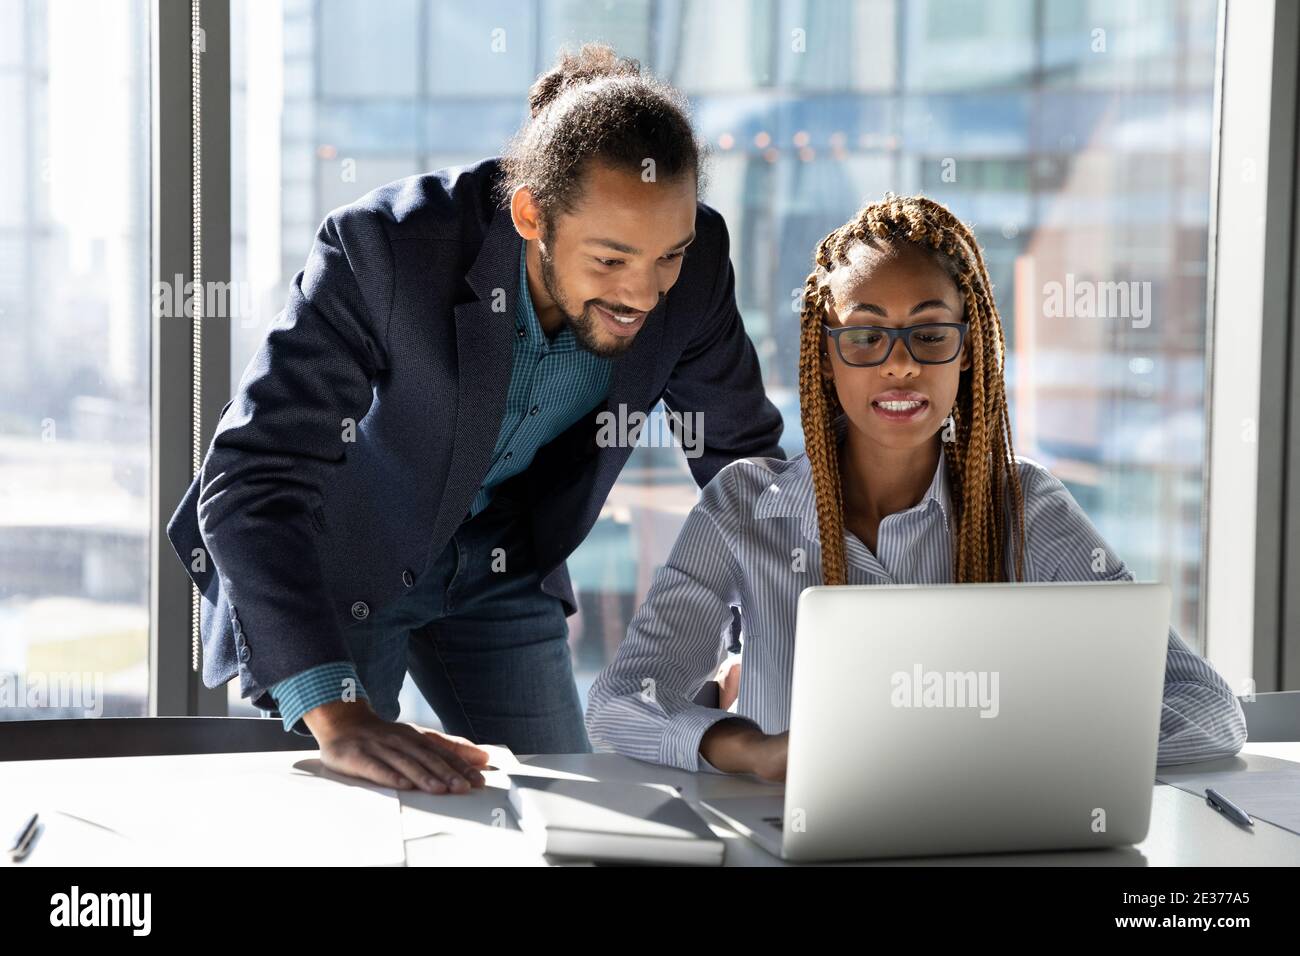 Des collègues multiethniques souriants travaillent ensemble sur un ordinateur portable Banque D'Images